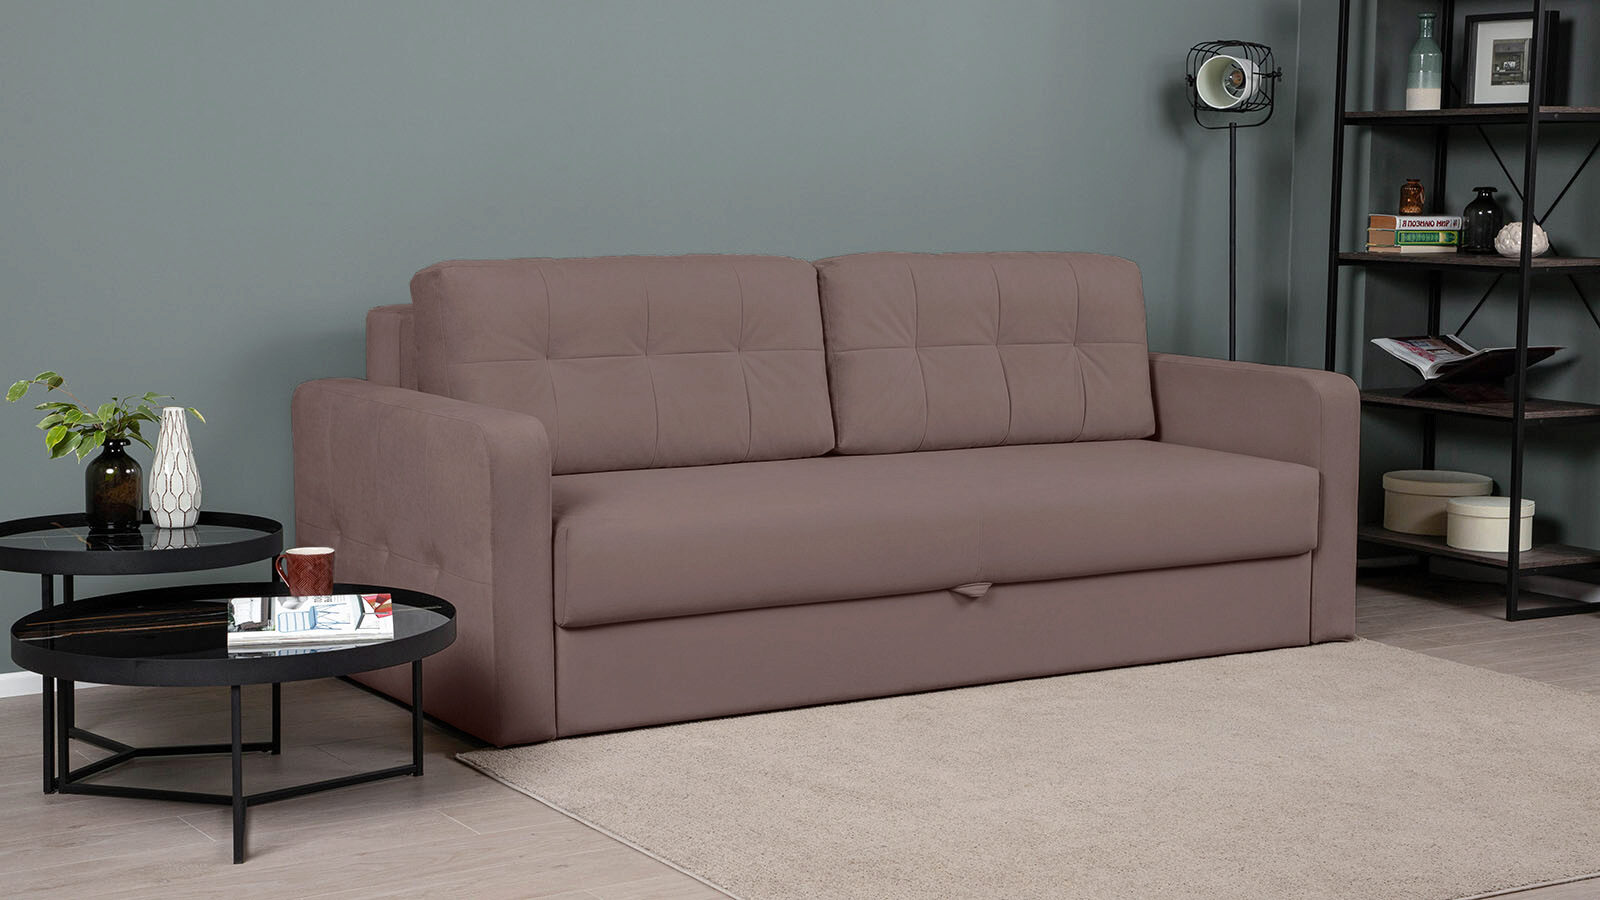 фото Прямой диван loko pro с широкими подлокотниками, с матрасом комбинированной жесткости askona